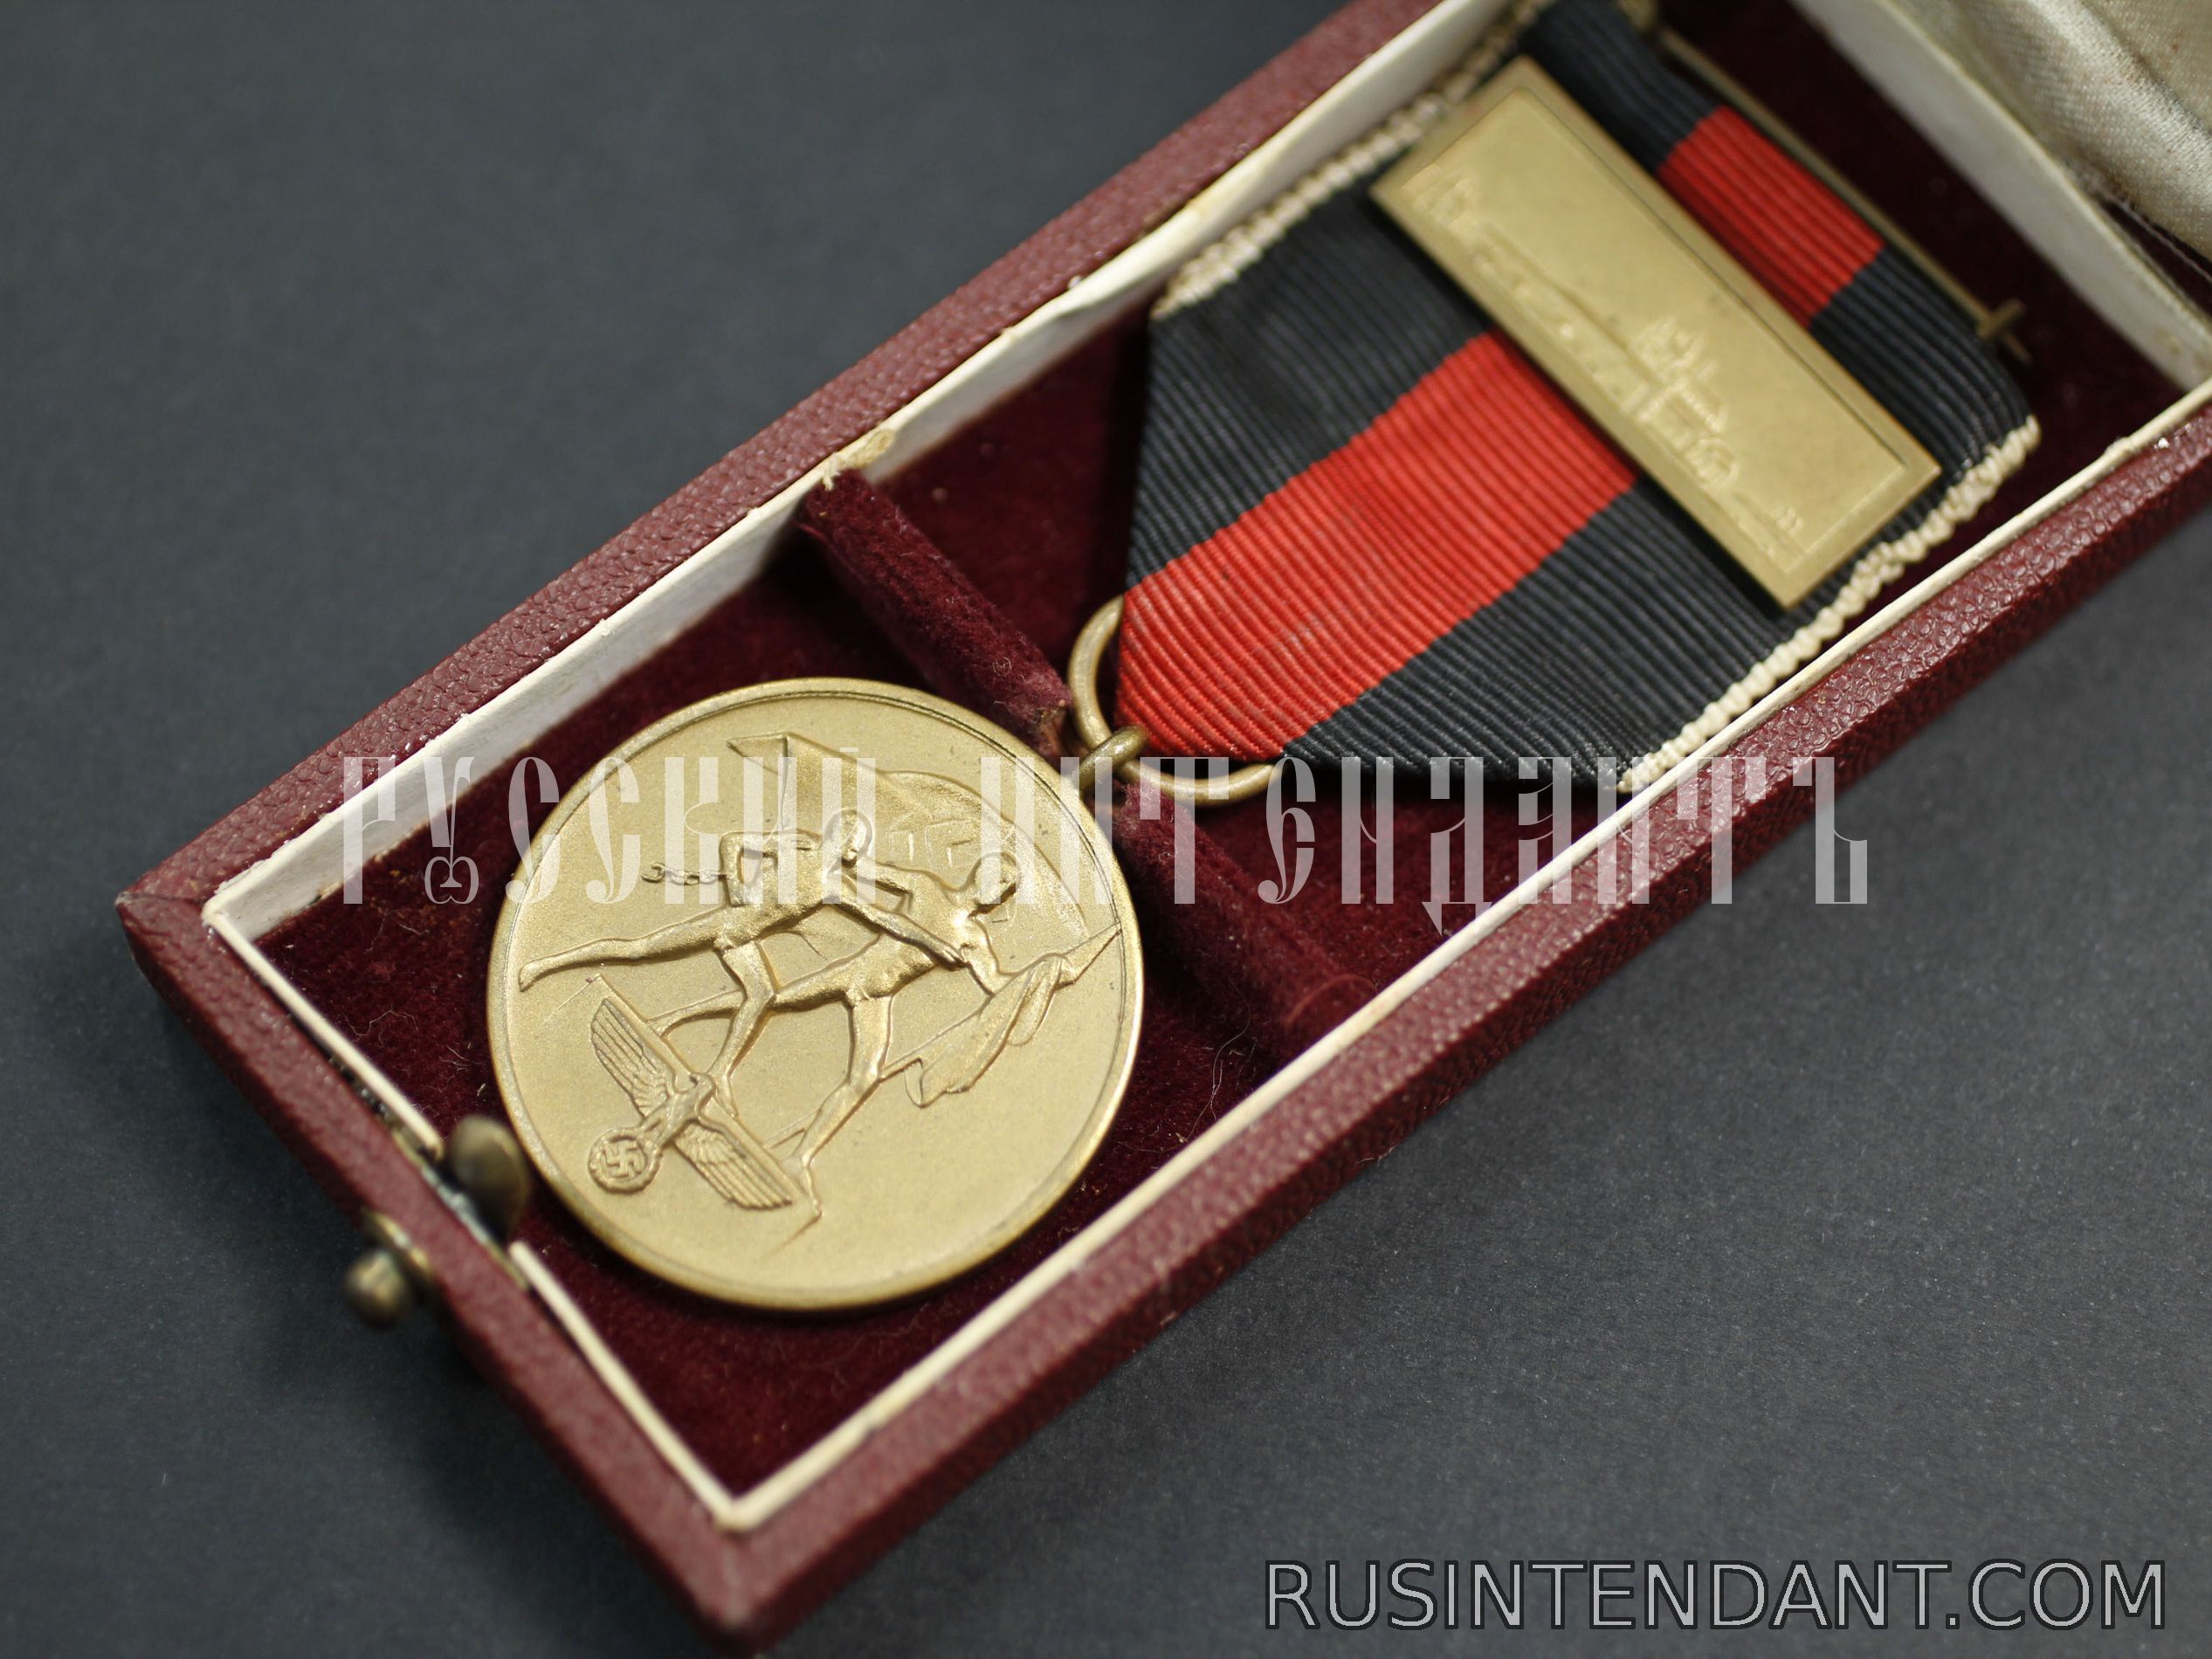 Фото 2: Медаль "В память 1 октября 1938 года" со шпангой 